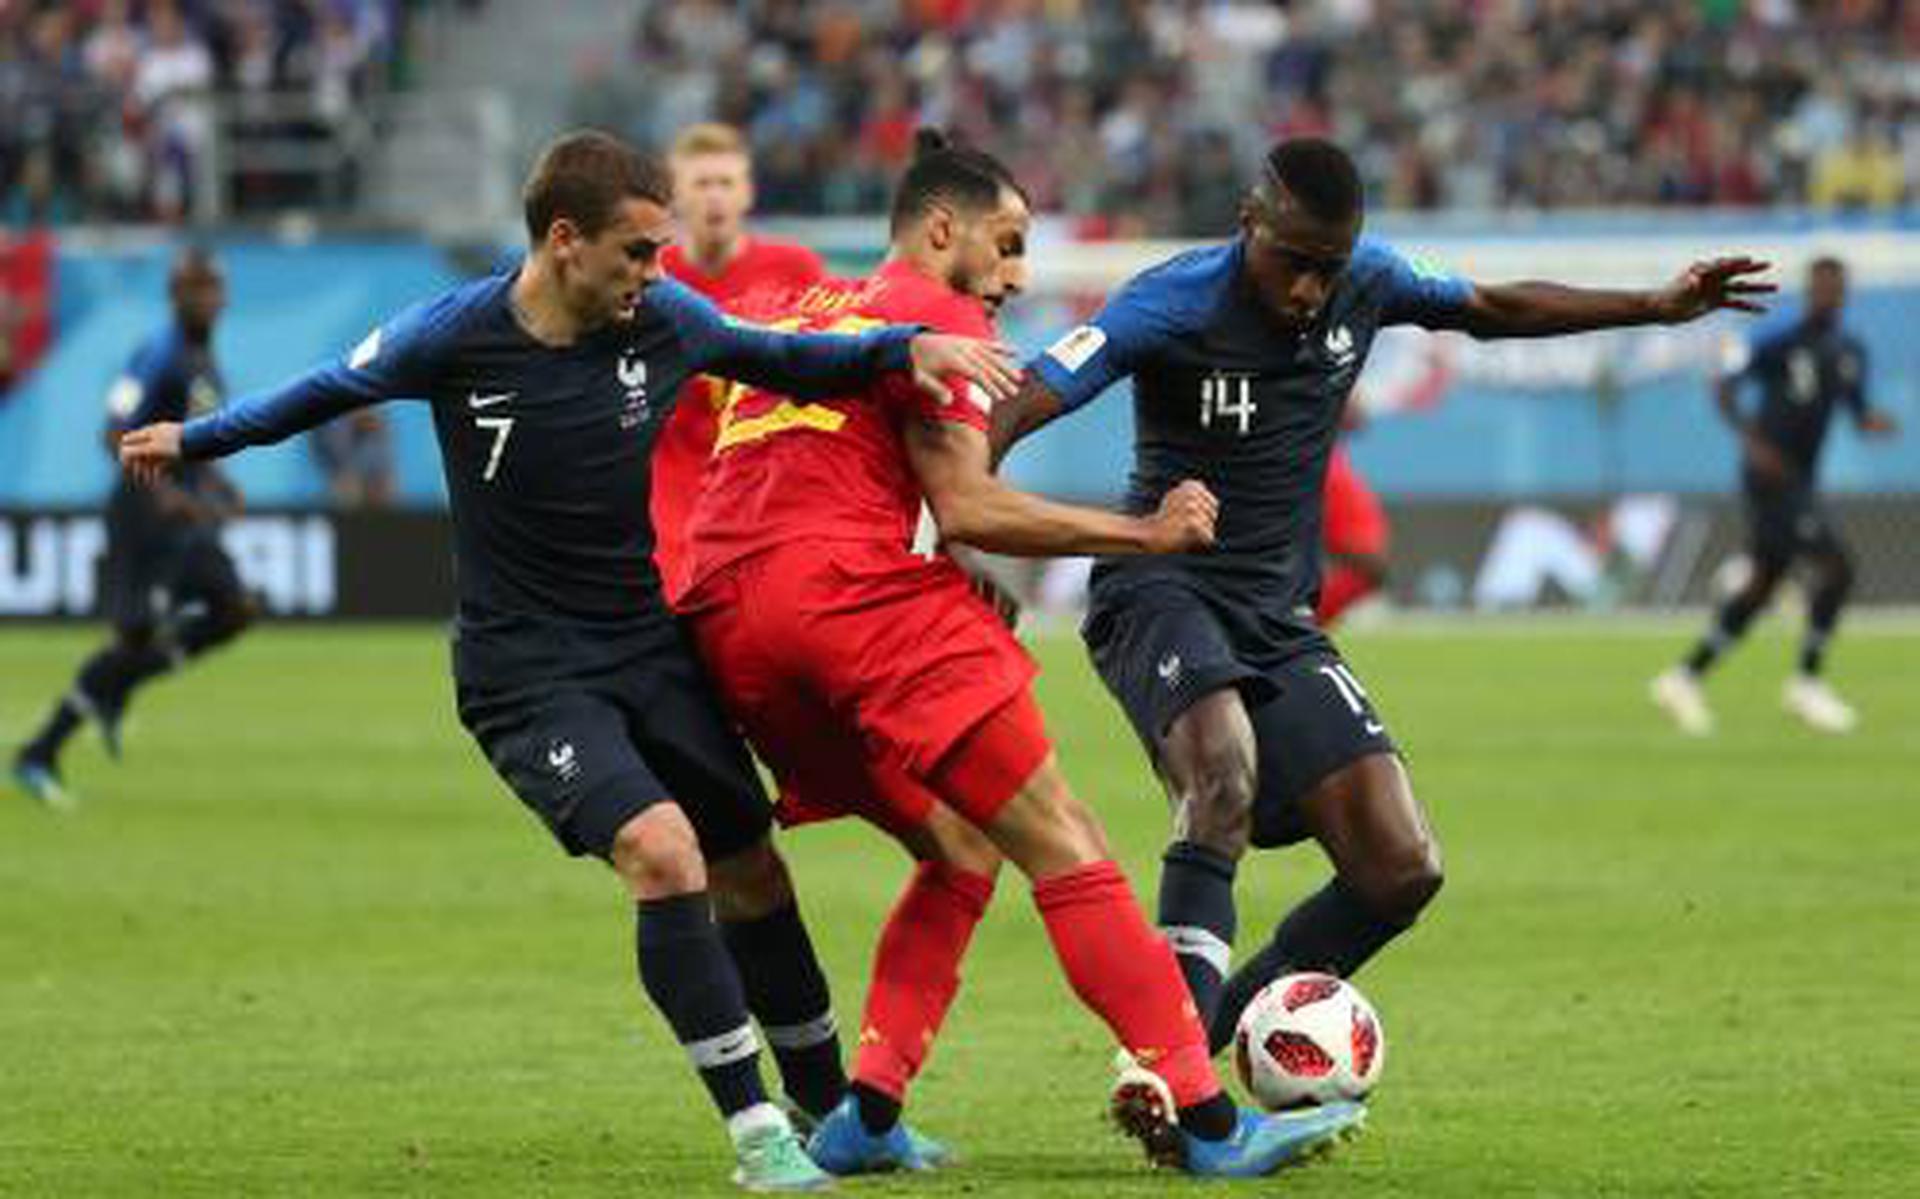 doen alsof last Voorbijganger Frankrijk stuit opmars België op WK - Dagblad van het Noorden